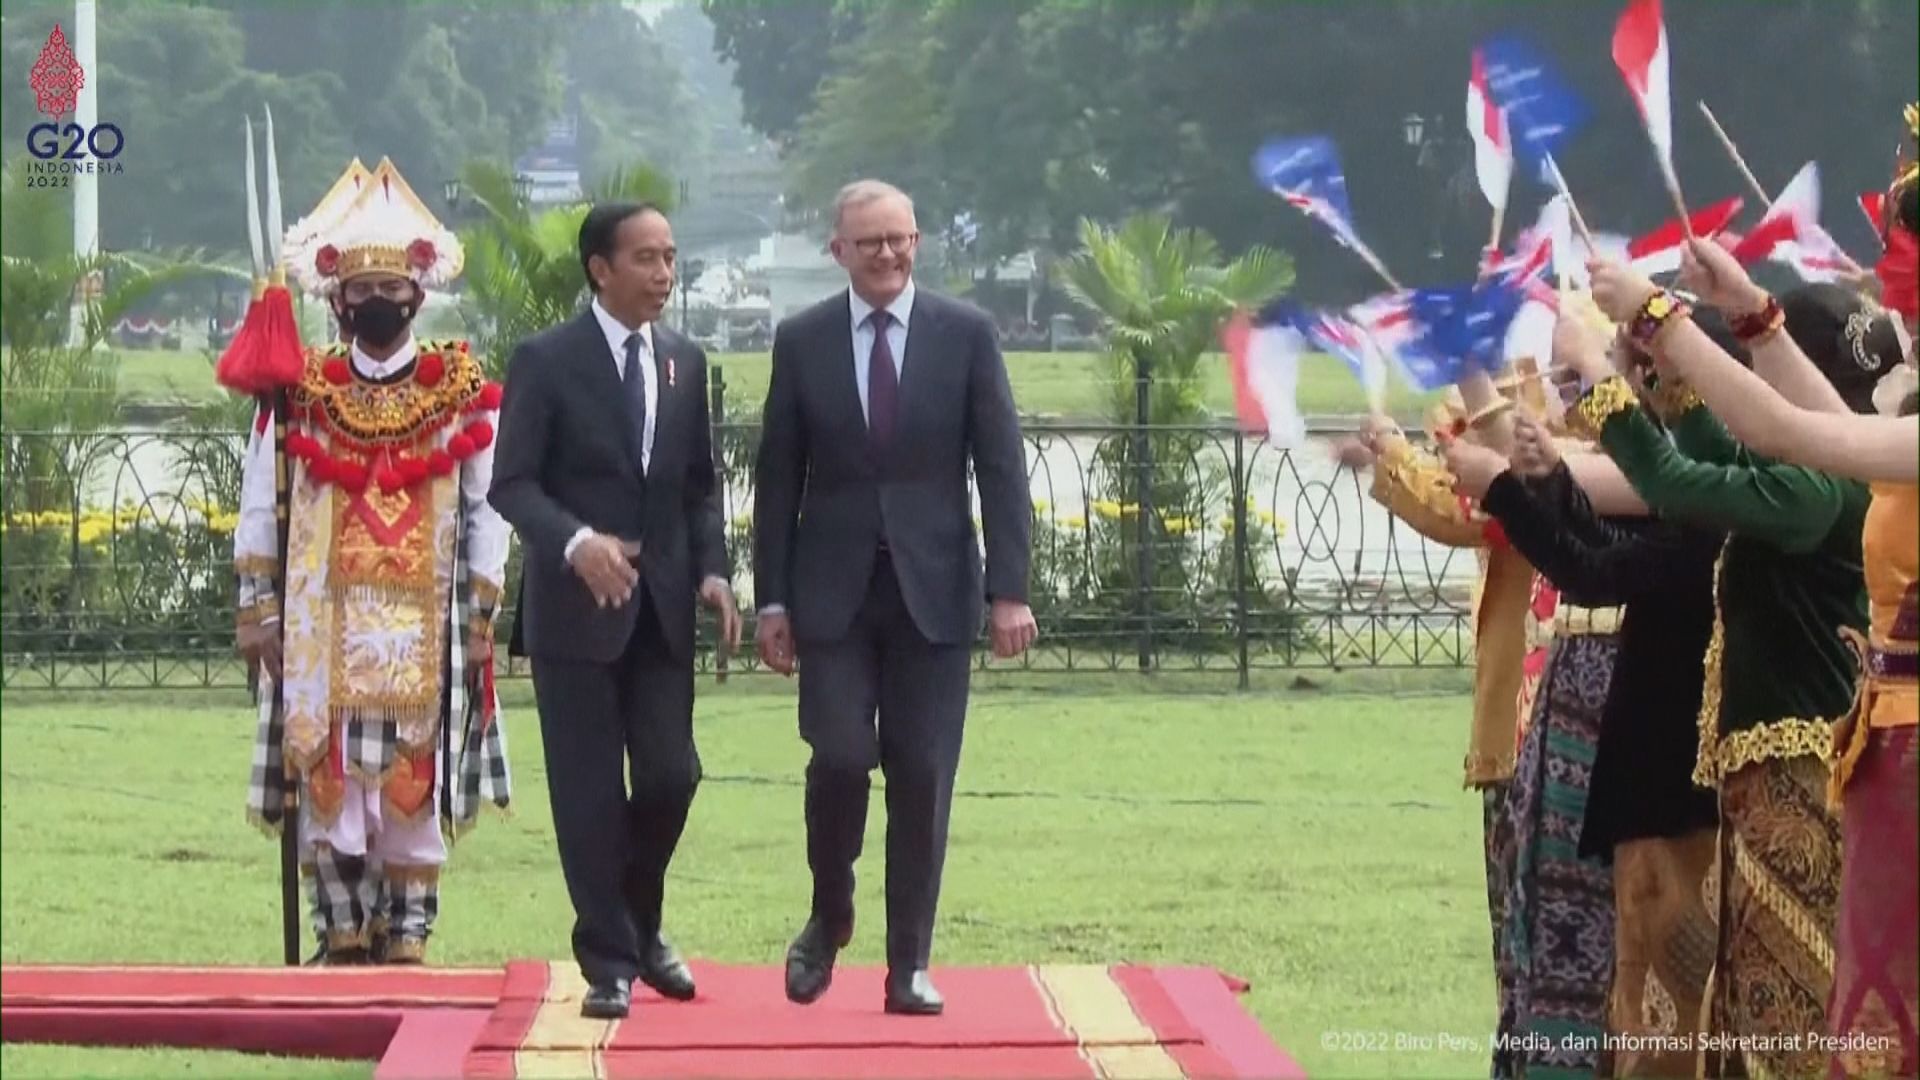 澳洲總理阿爾巴內塞出訪印尼